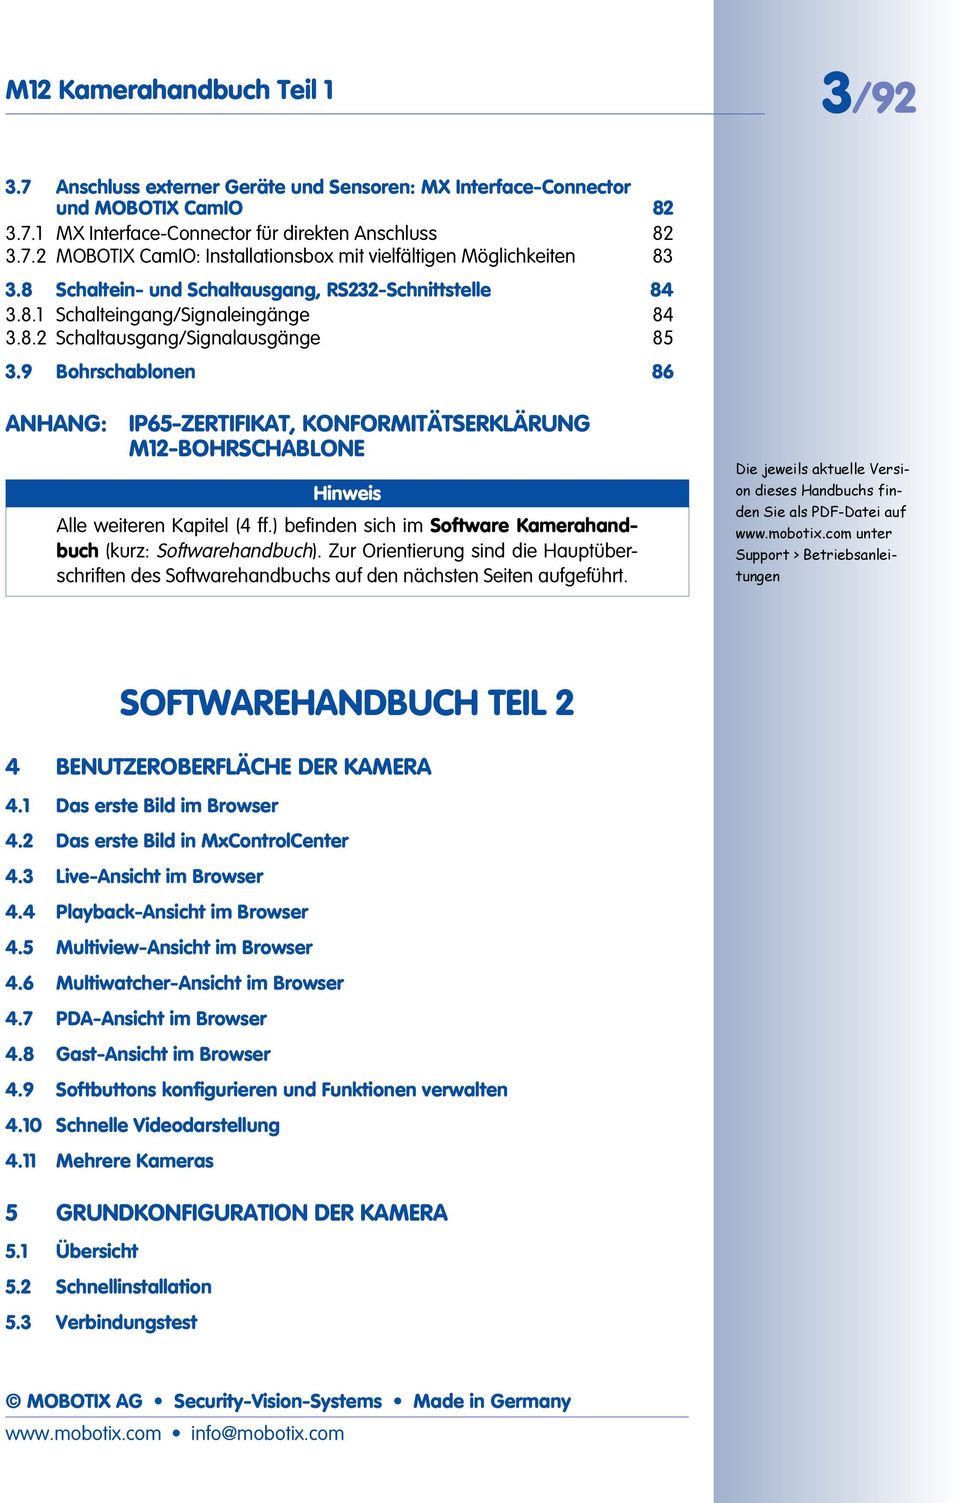 9 Bohrschablonen 86 ANHANG: IP65-ZERTIFIKAT, KONFORMITÄTSERKLÄRUNG M12-BOHRSCHABLONE Hinweis Alle weiteren Kapitel (4 ff.) befinden sich im Software Kamerahandbuch (kurz: Softwarehandbuch).